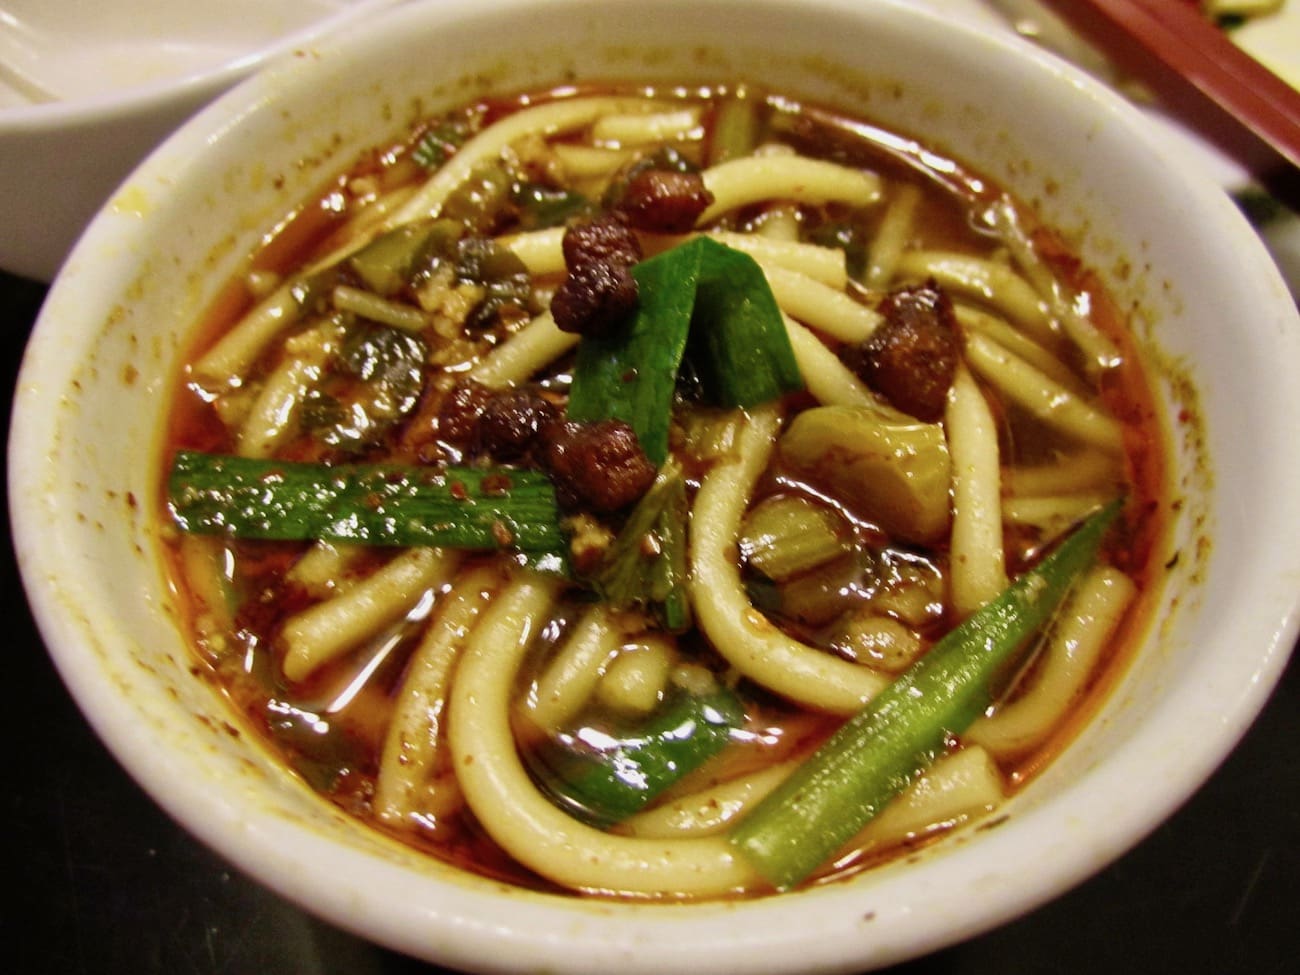 kunming noodles